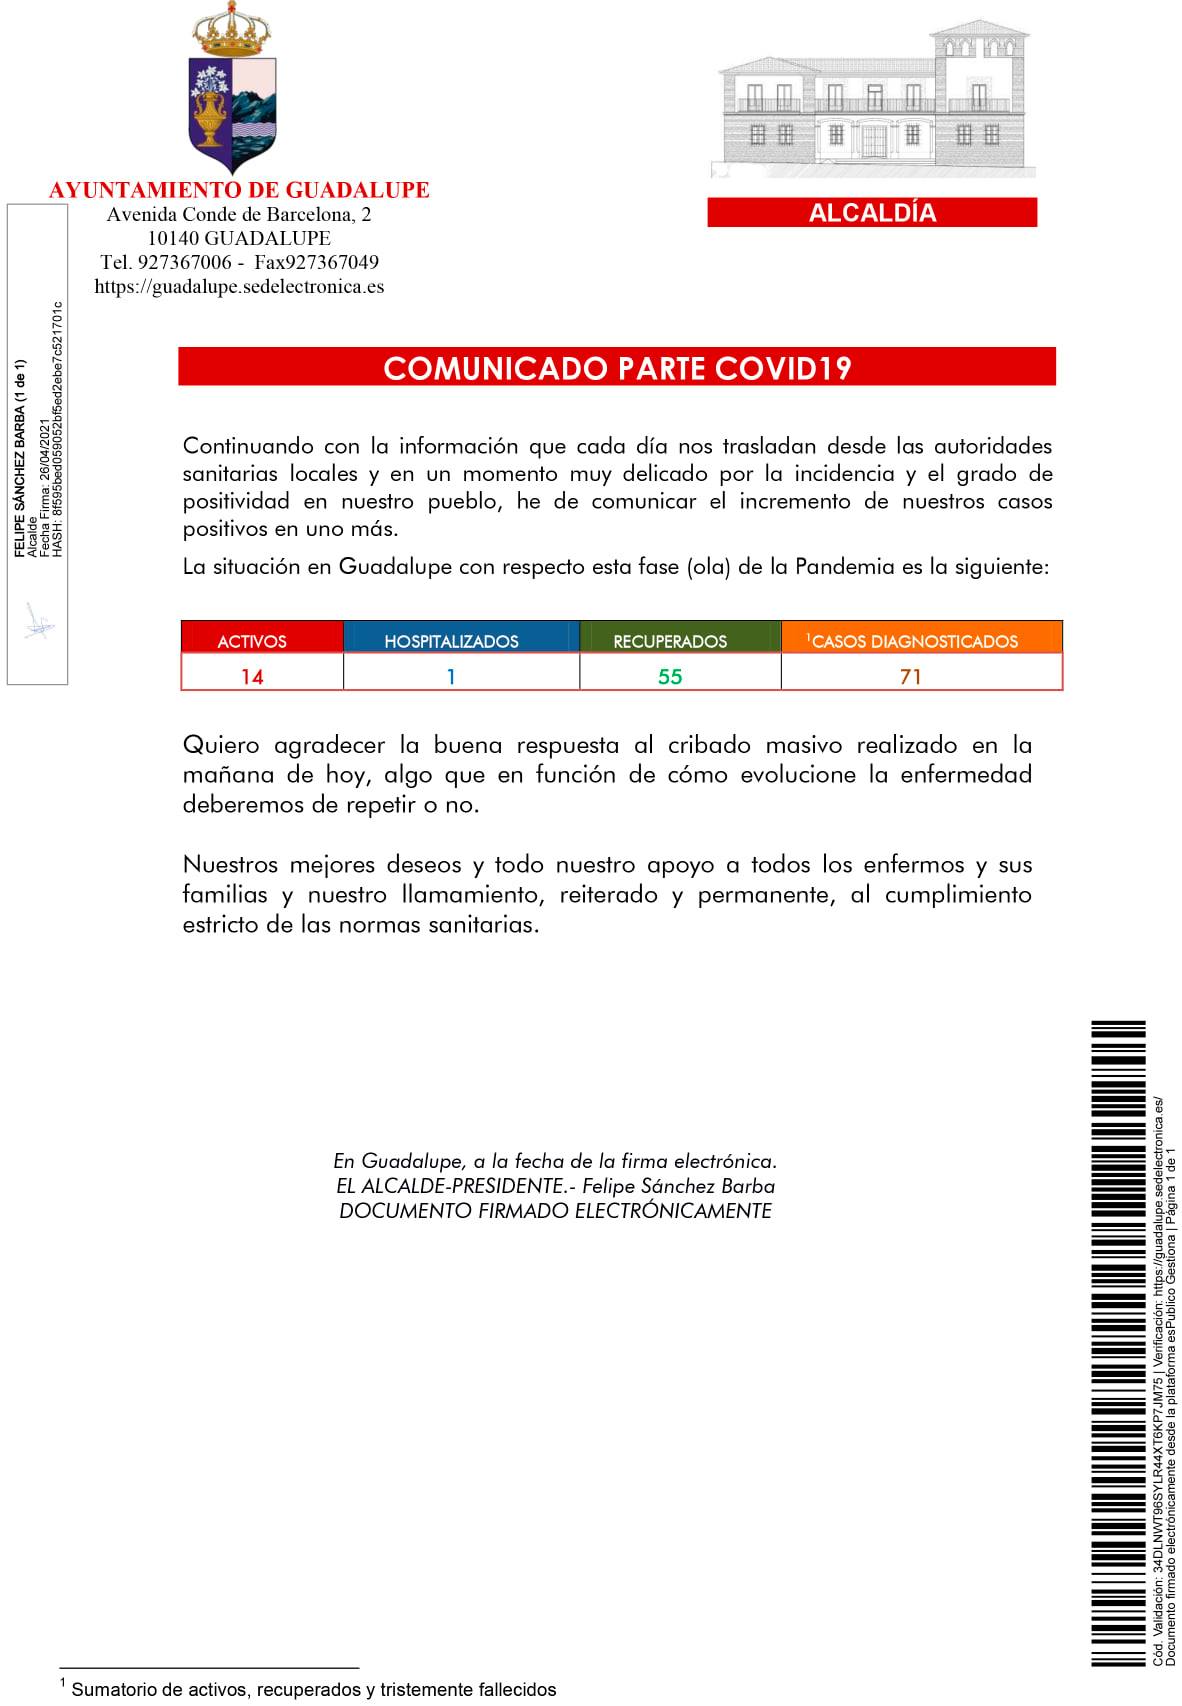 14 casos positivos activos de COVID-19 (abril 2021) - Guadalupe (Cáceres)